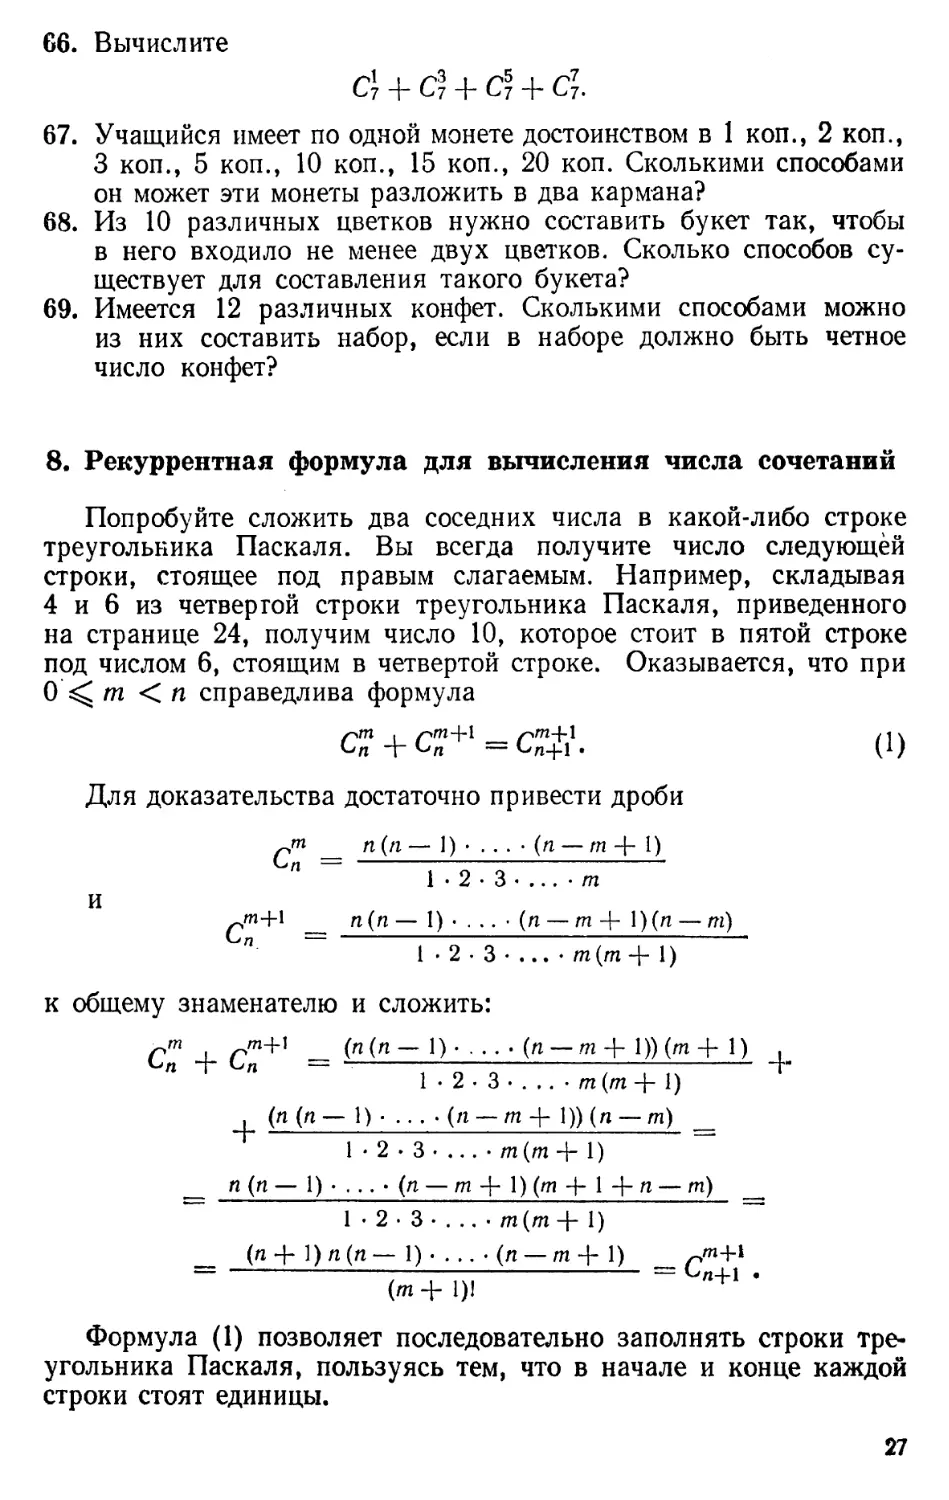 8. Рекуррентная формула для вычисления числа сочетаний